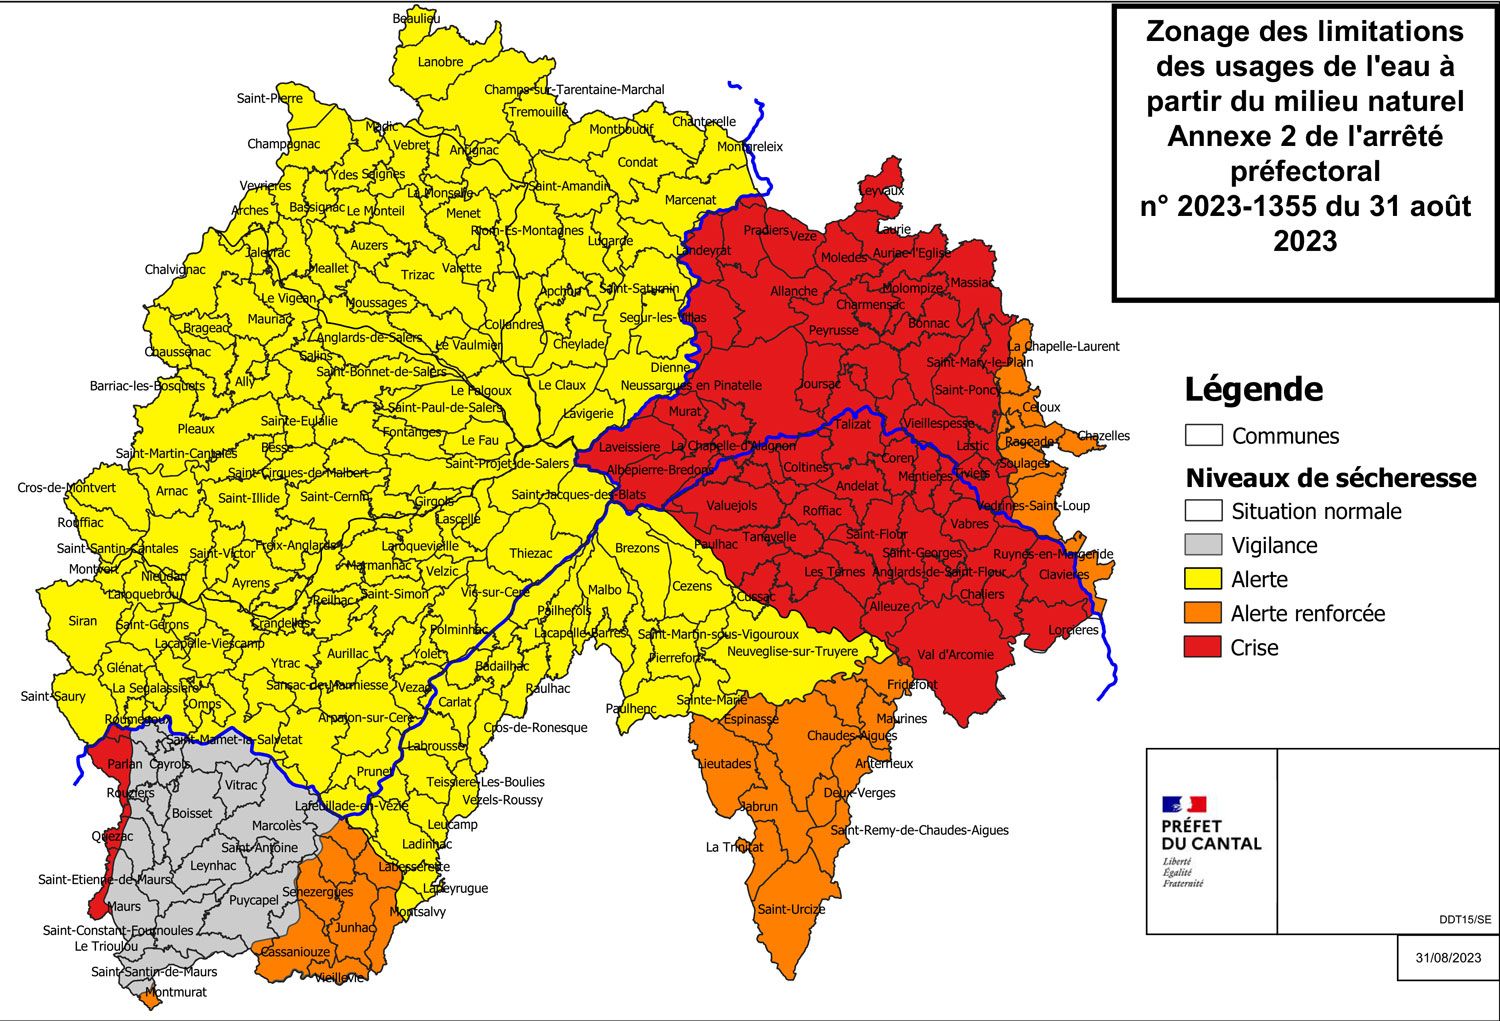 Limitation provisoire des usages de l'eau dans le département du Cantal